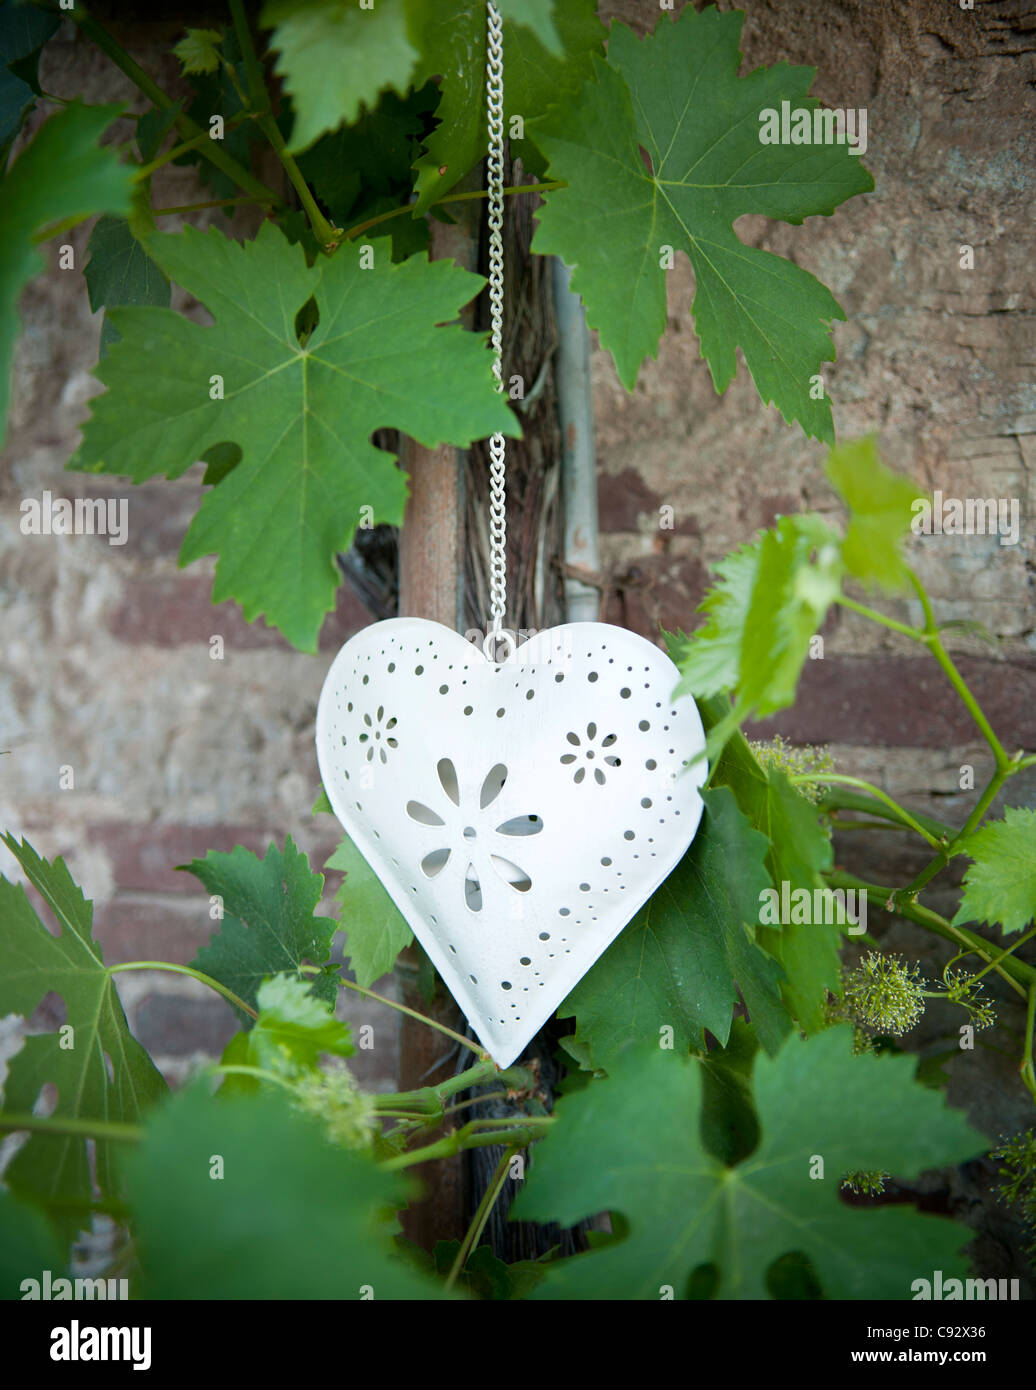 Das Herz ist das international anerkannte Symbol der Liebe und ist traditionell verwendet die Worl über Hochzeiten dekorieren. Stockfoto